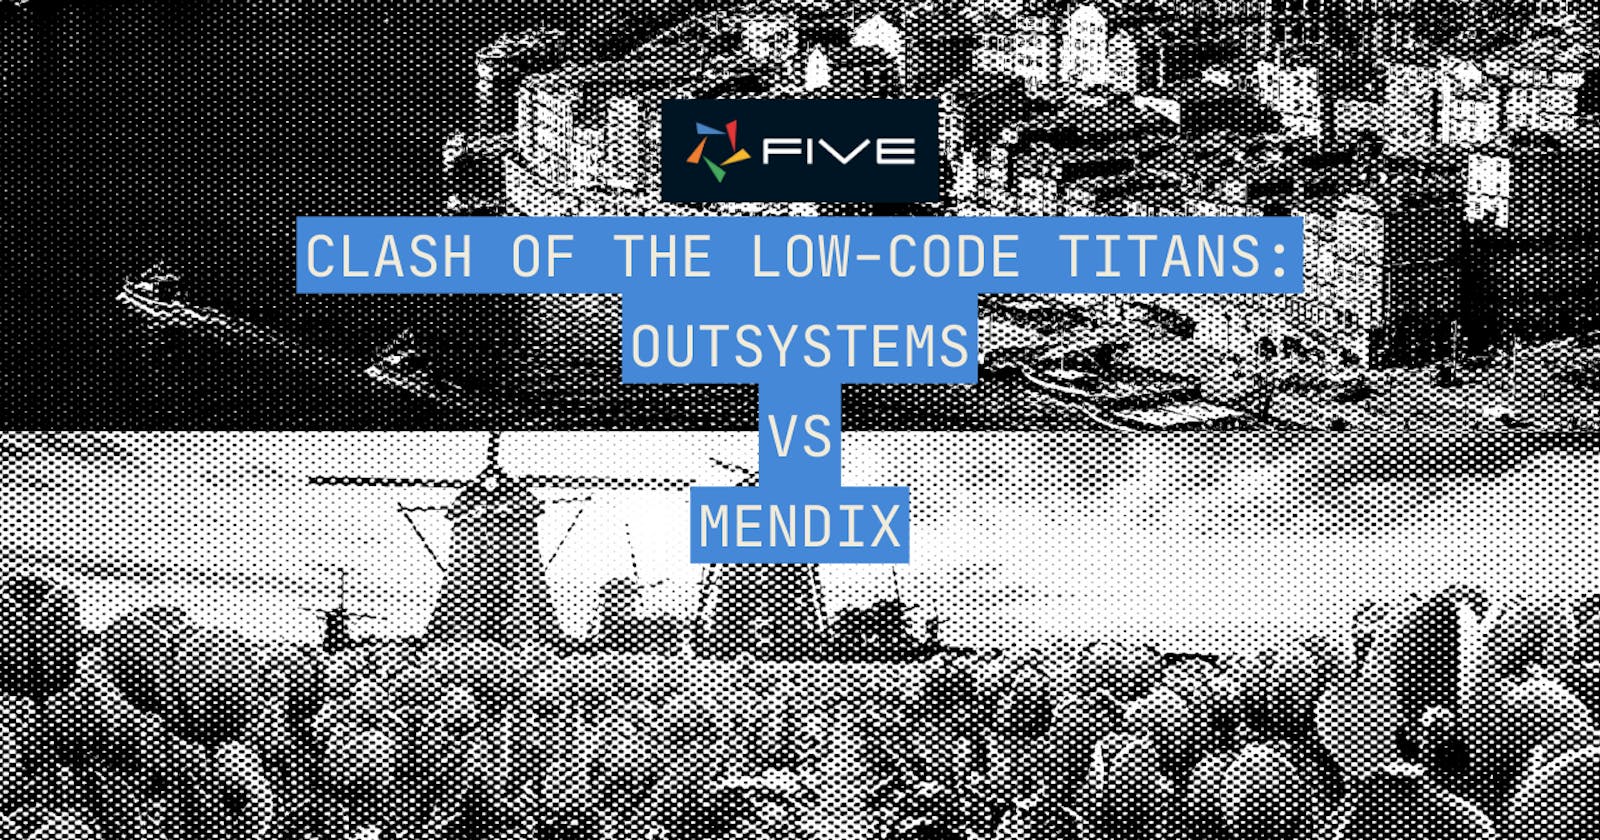 OutSystems vs. Mendix: Clash Of The Low-Code Titans